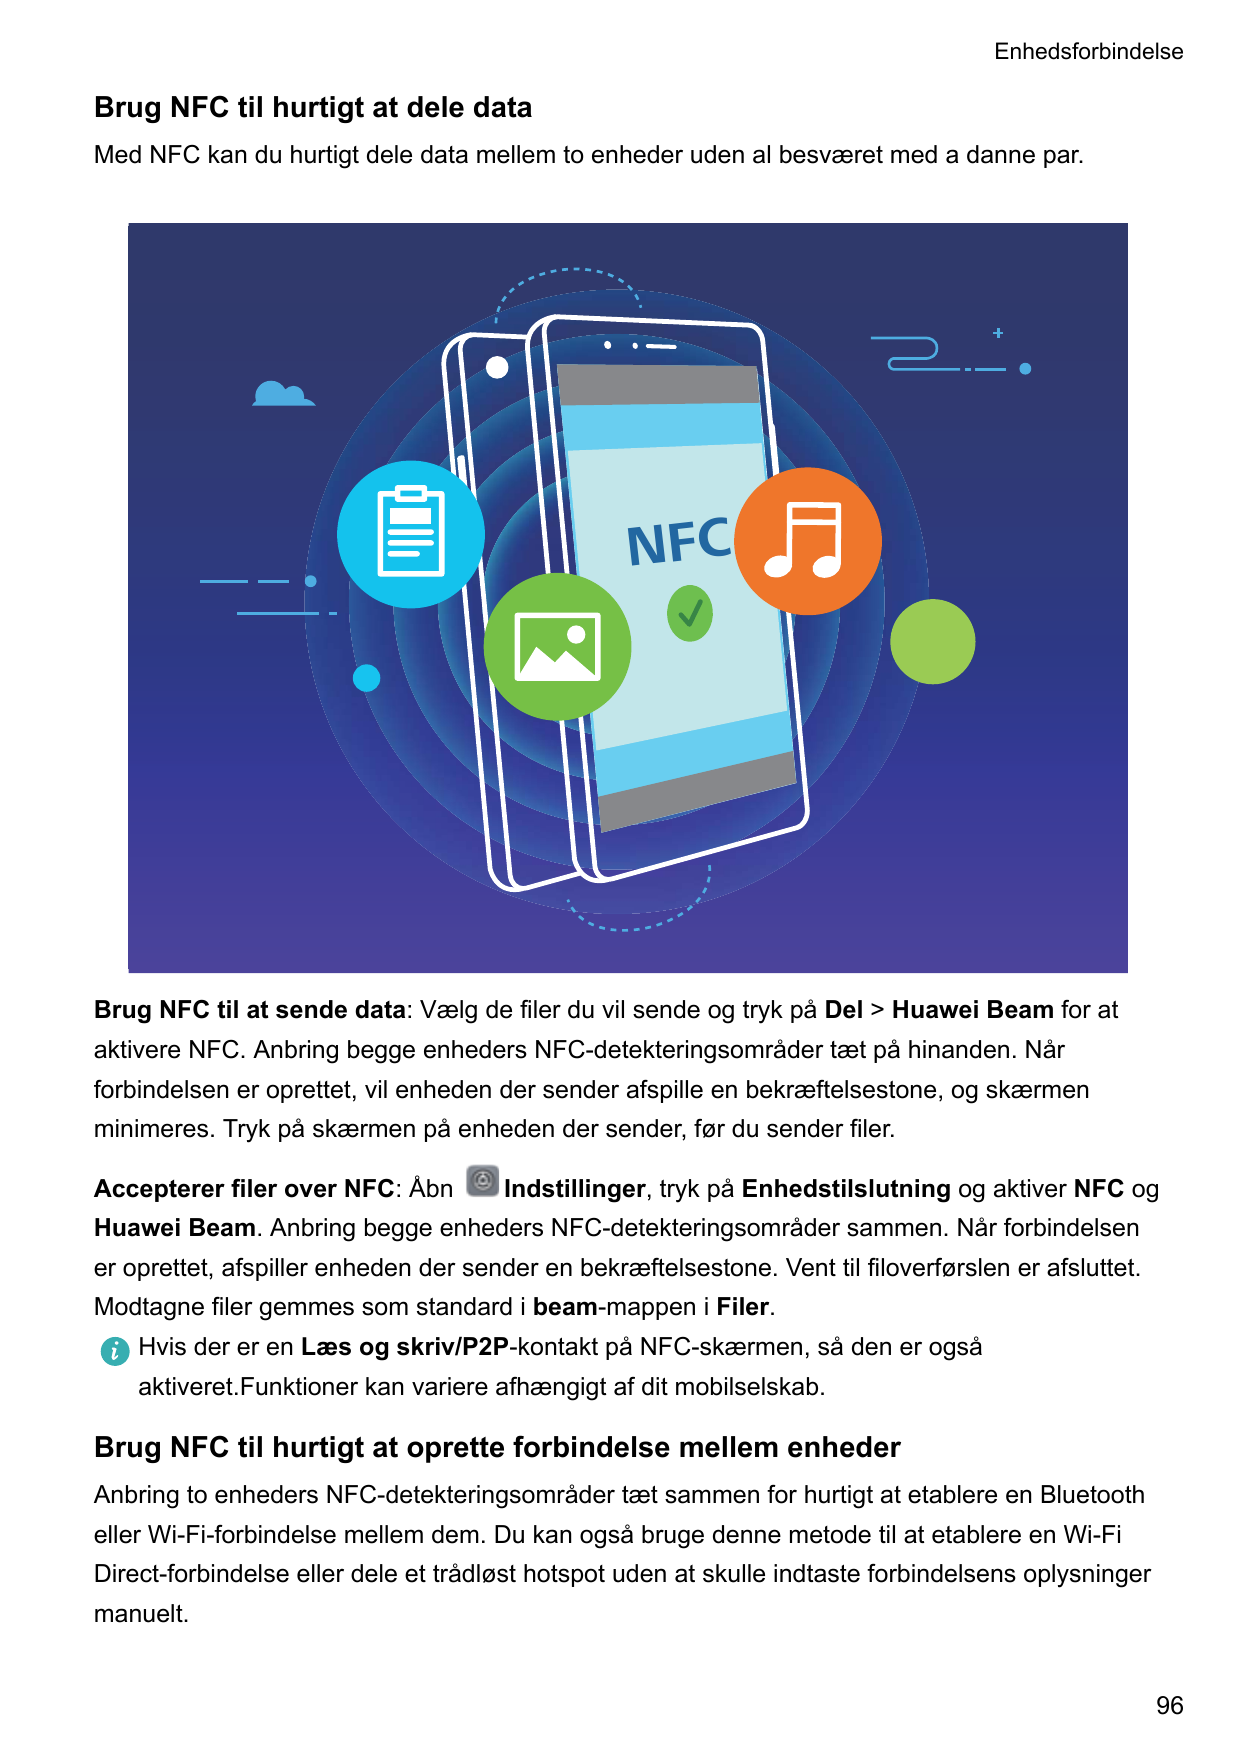 EnhedsforbindelseBrug NFC til hurtigt at dele dataMed NFC kan du hurtigt dele data mellem to enheder uden al besværet med a dann